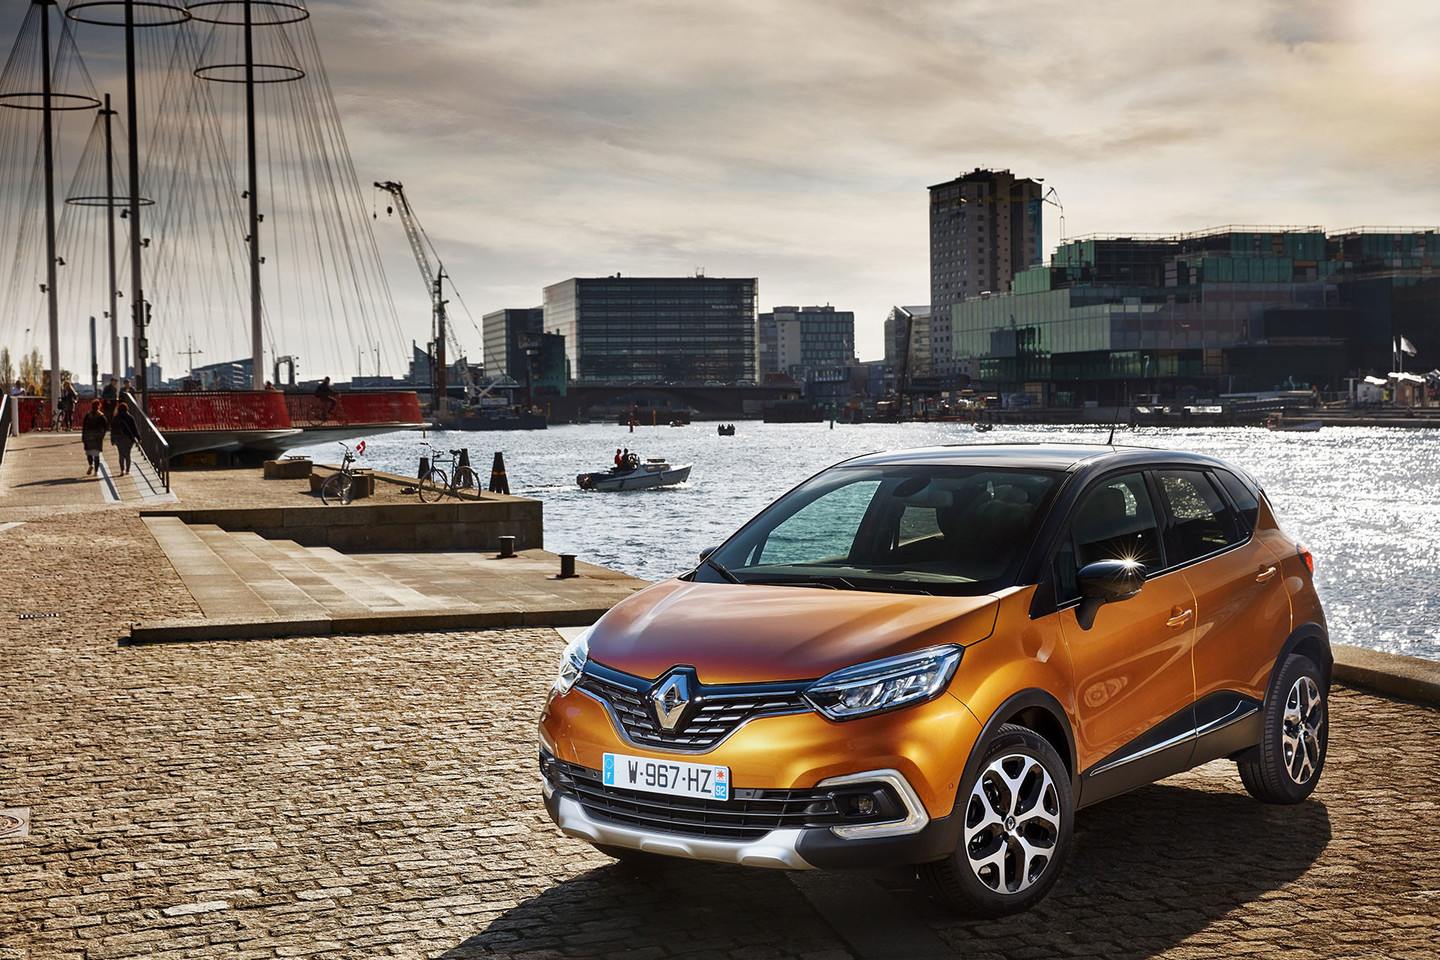 Atnaujintą „Renault Captur“ lietuviai jau gali apžiūrėti gamintojo atstovybių salonuose. <br>Gamintojo nuotr.